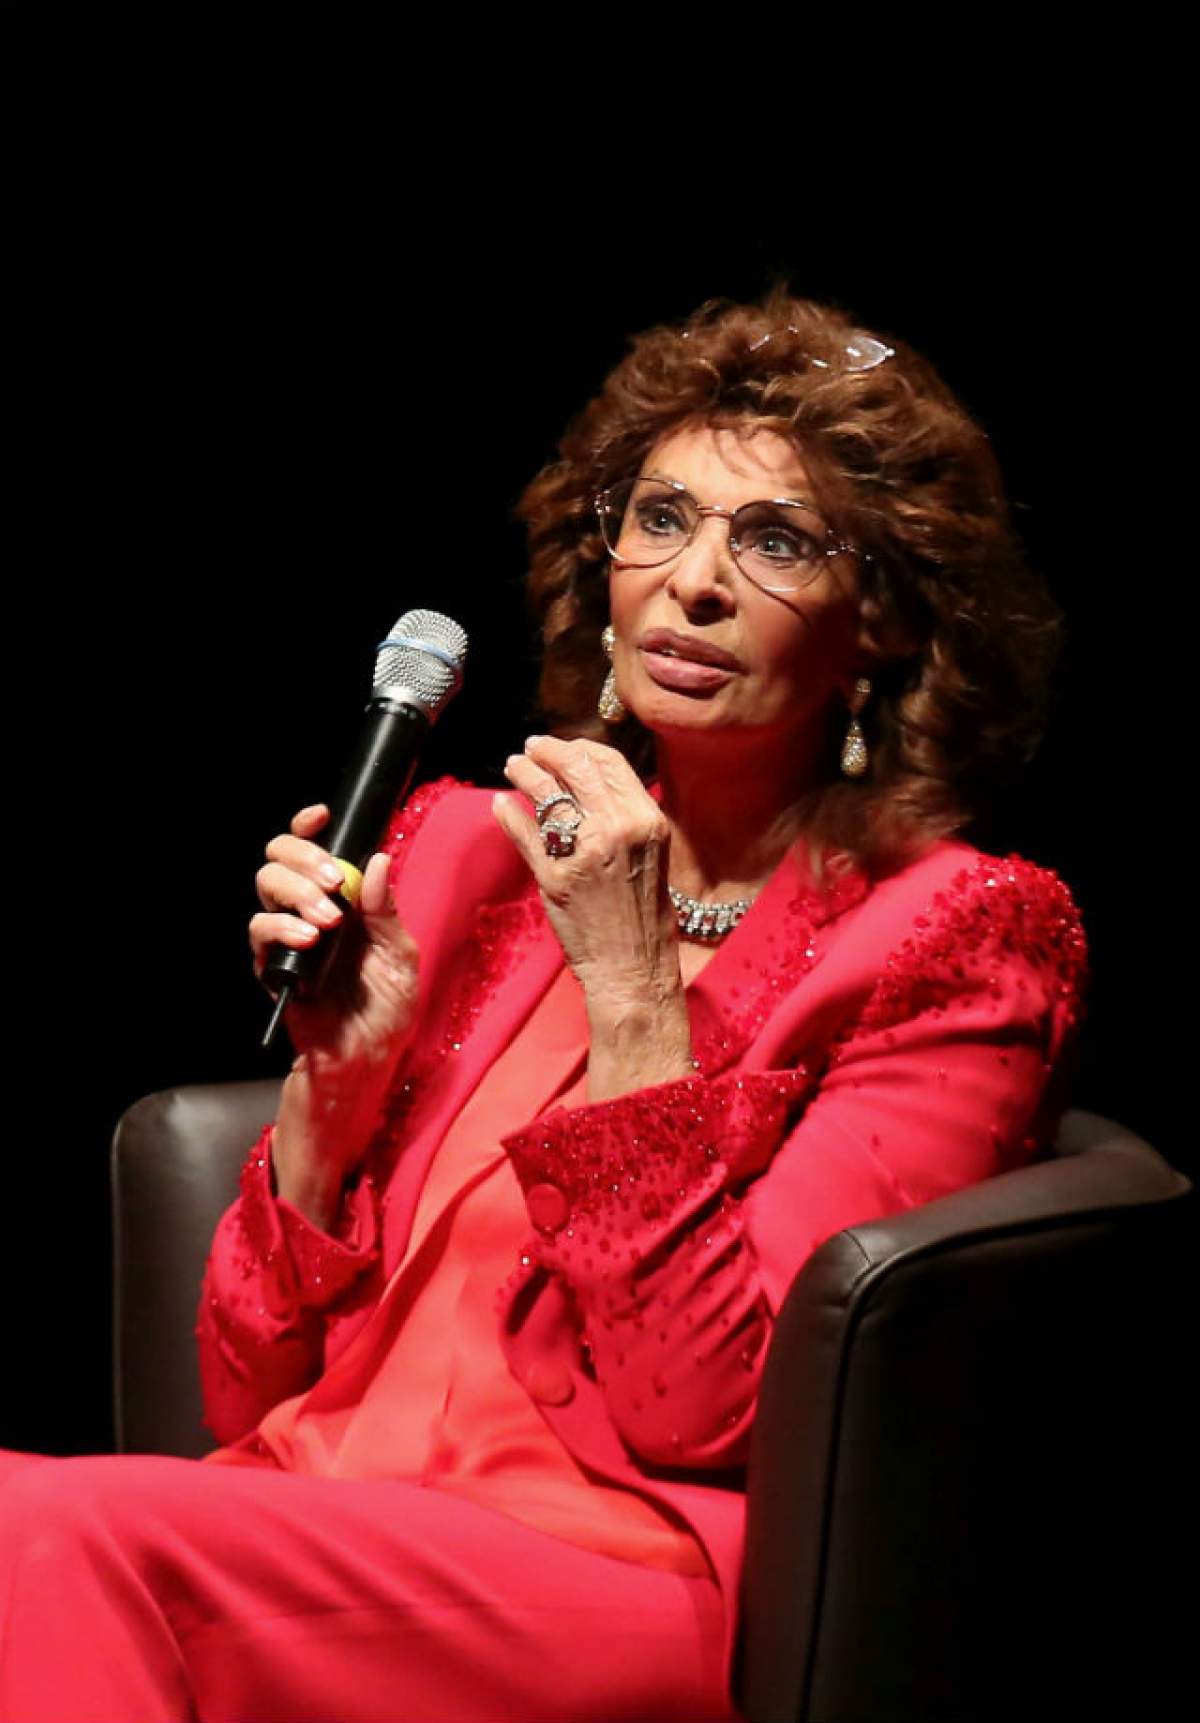 FOTO / A vrut să râdă, dar a nu a lăsat-o botoxul! Sophia Loren, la 81 de ani! Ce părere ai despre cum arată?